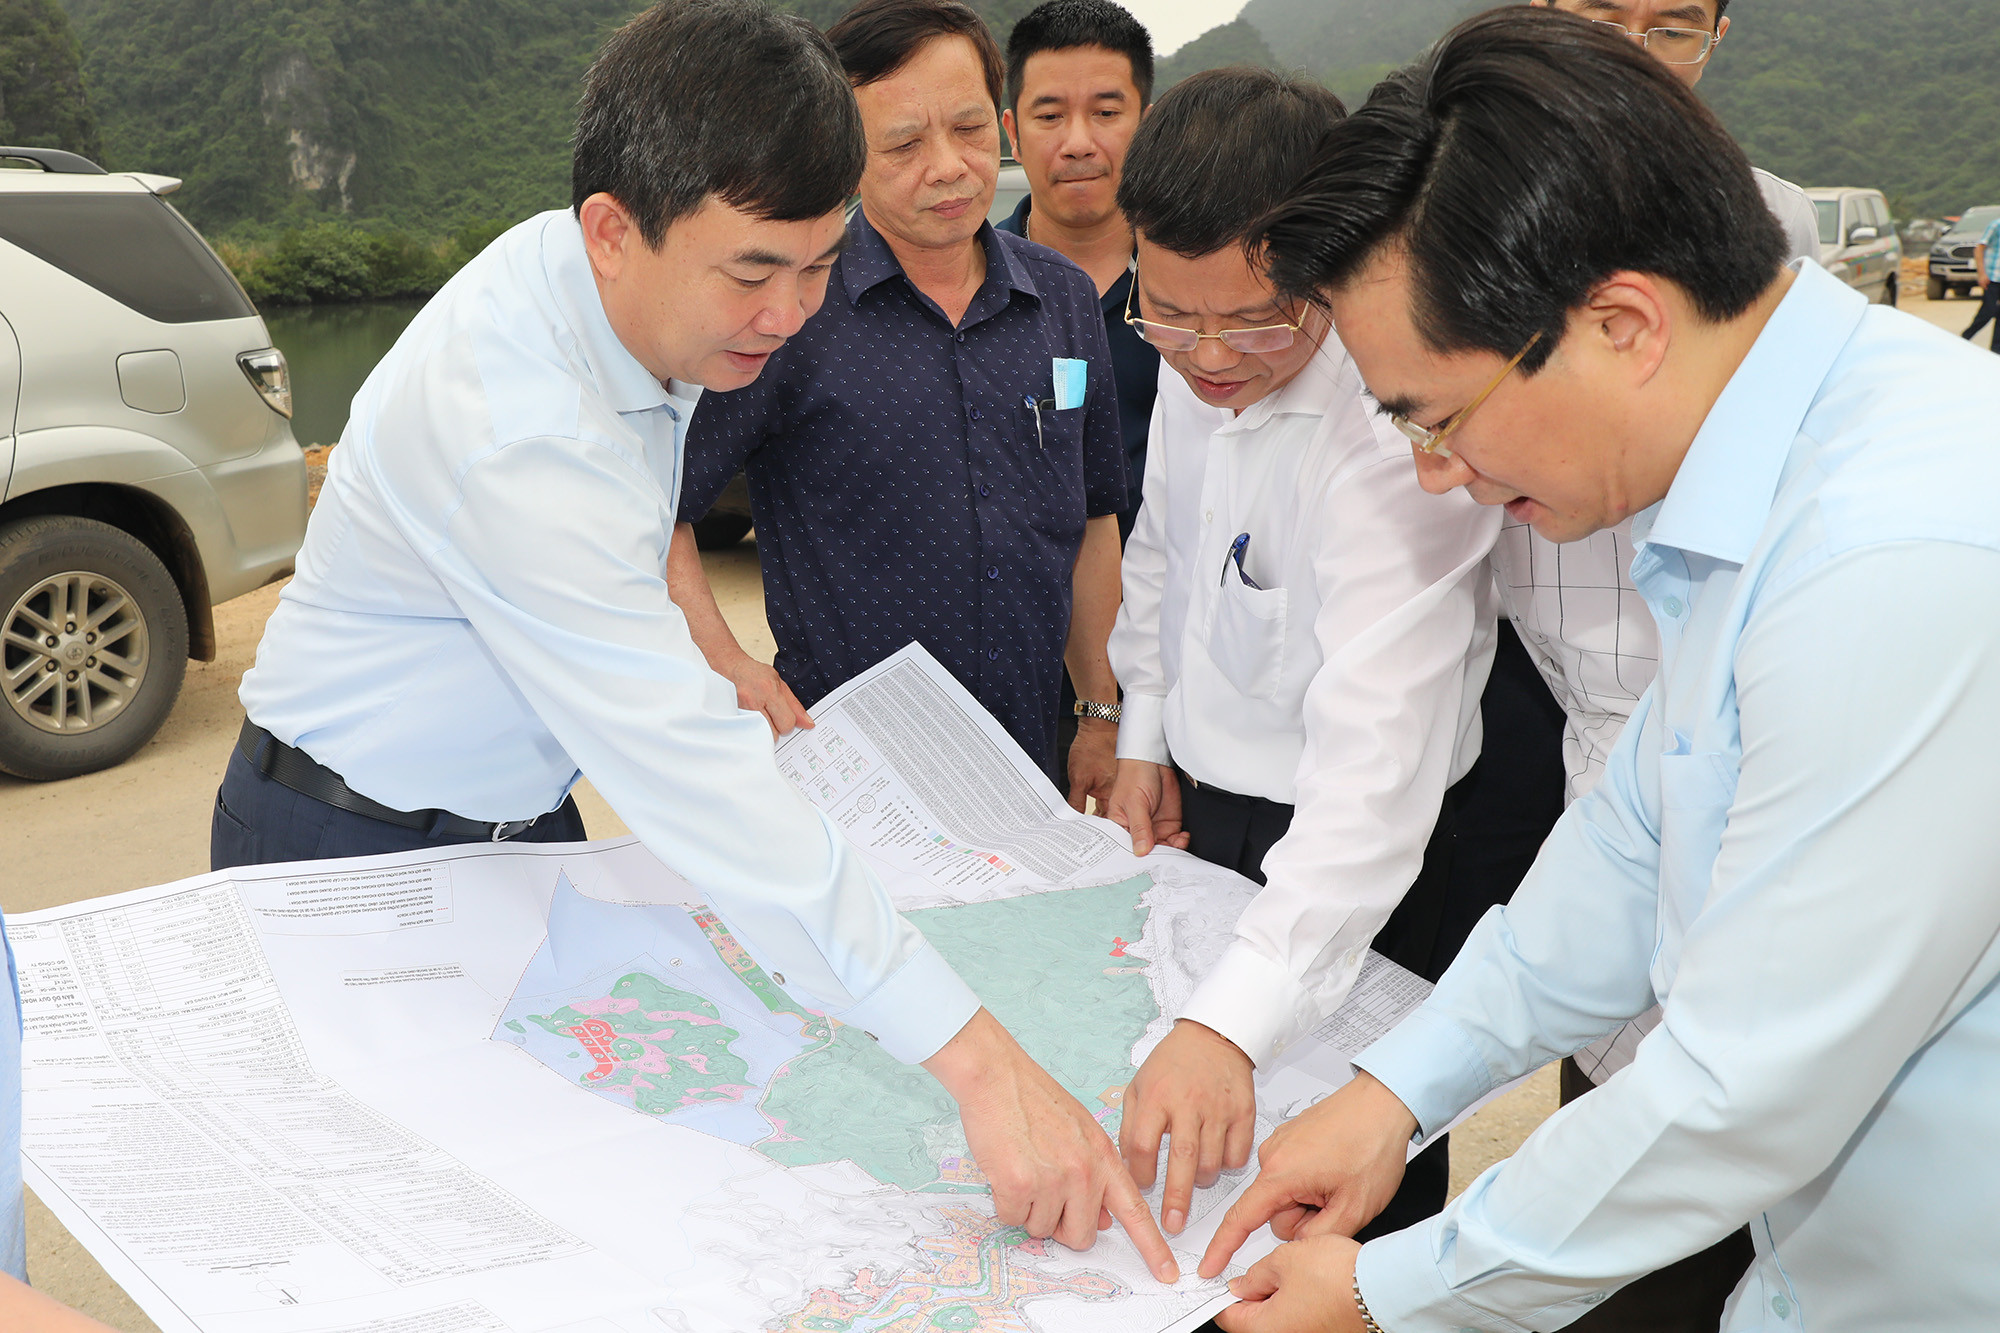 Phó Bí thư Thường trực Ngô Hoàng Ngân kiểm tra tiến độ dự án giao thông trên địa bàn TP Cẩm Phả.